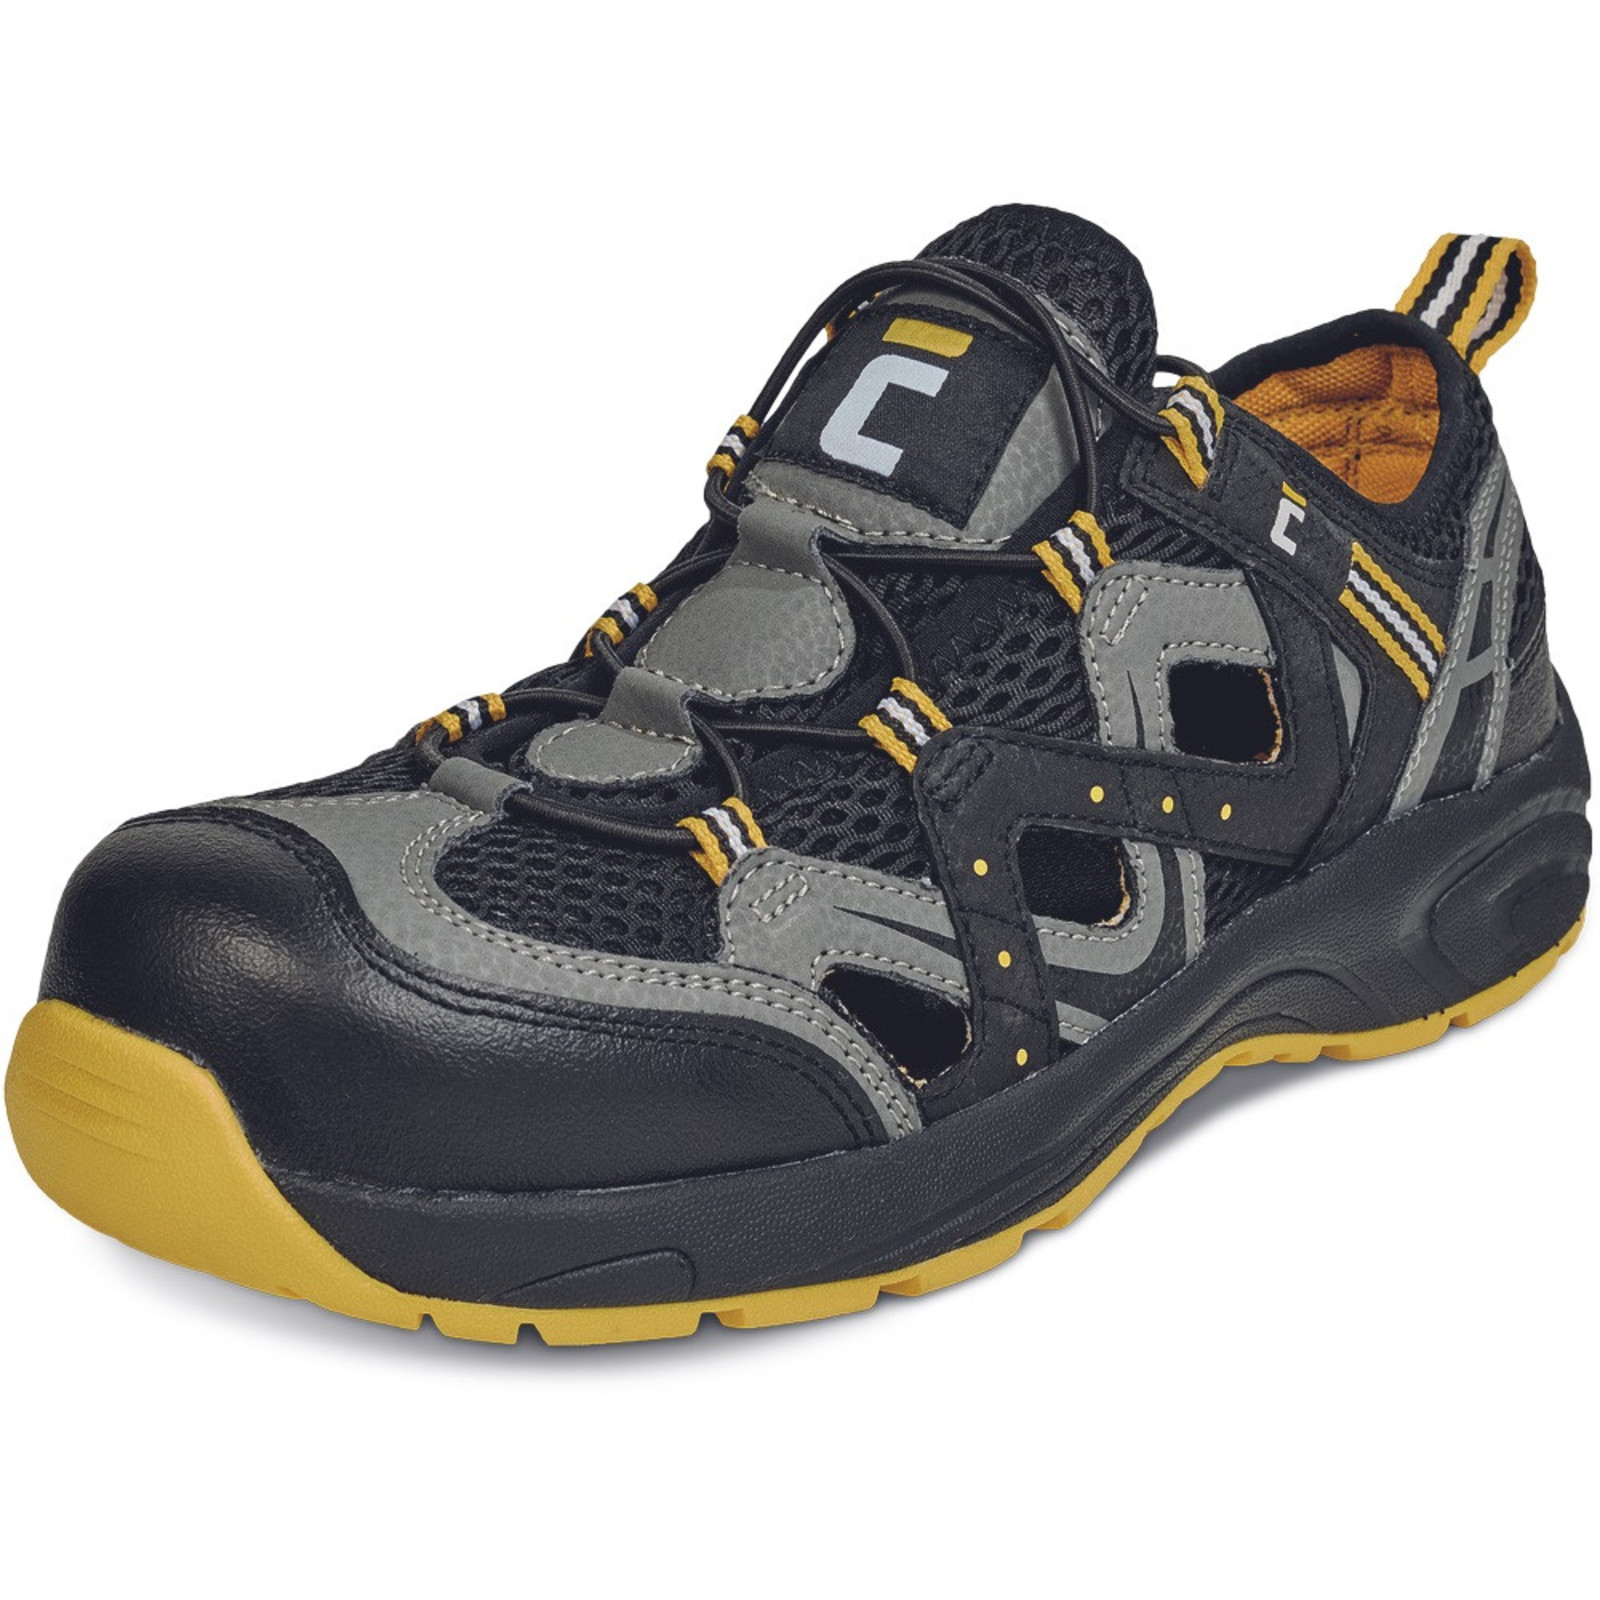 Bezpečnostné sandále Cerva Henford MF S1 SRC - veľkosť: 47, farba: čierna/žltá